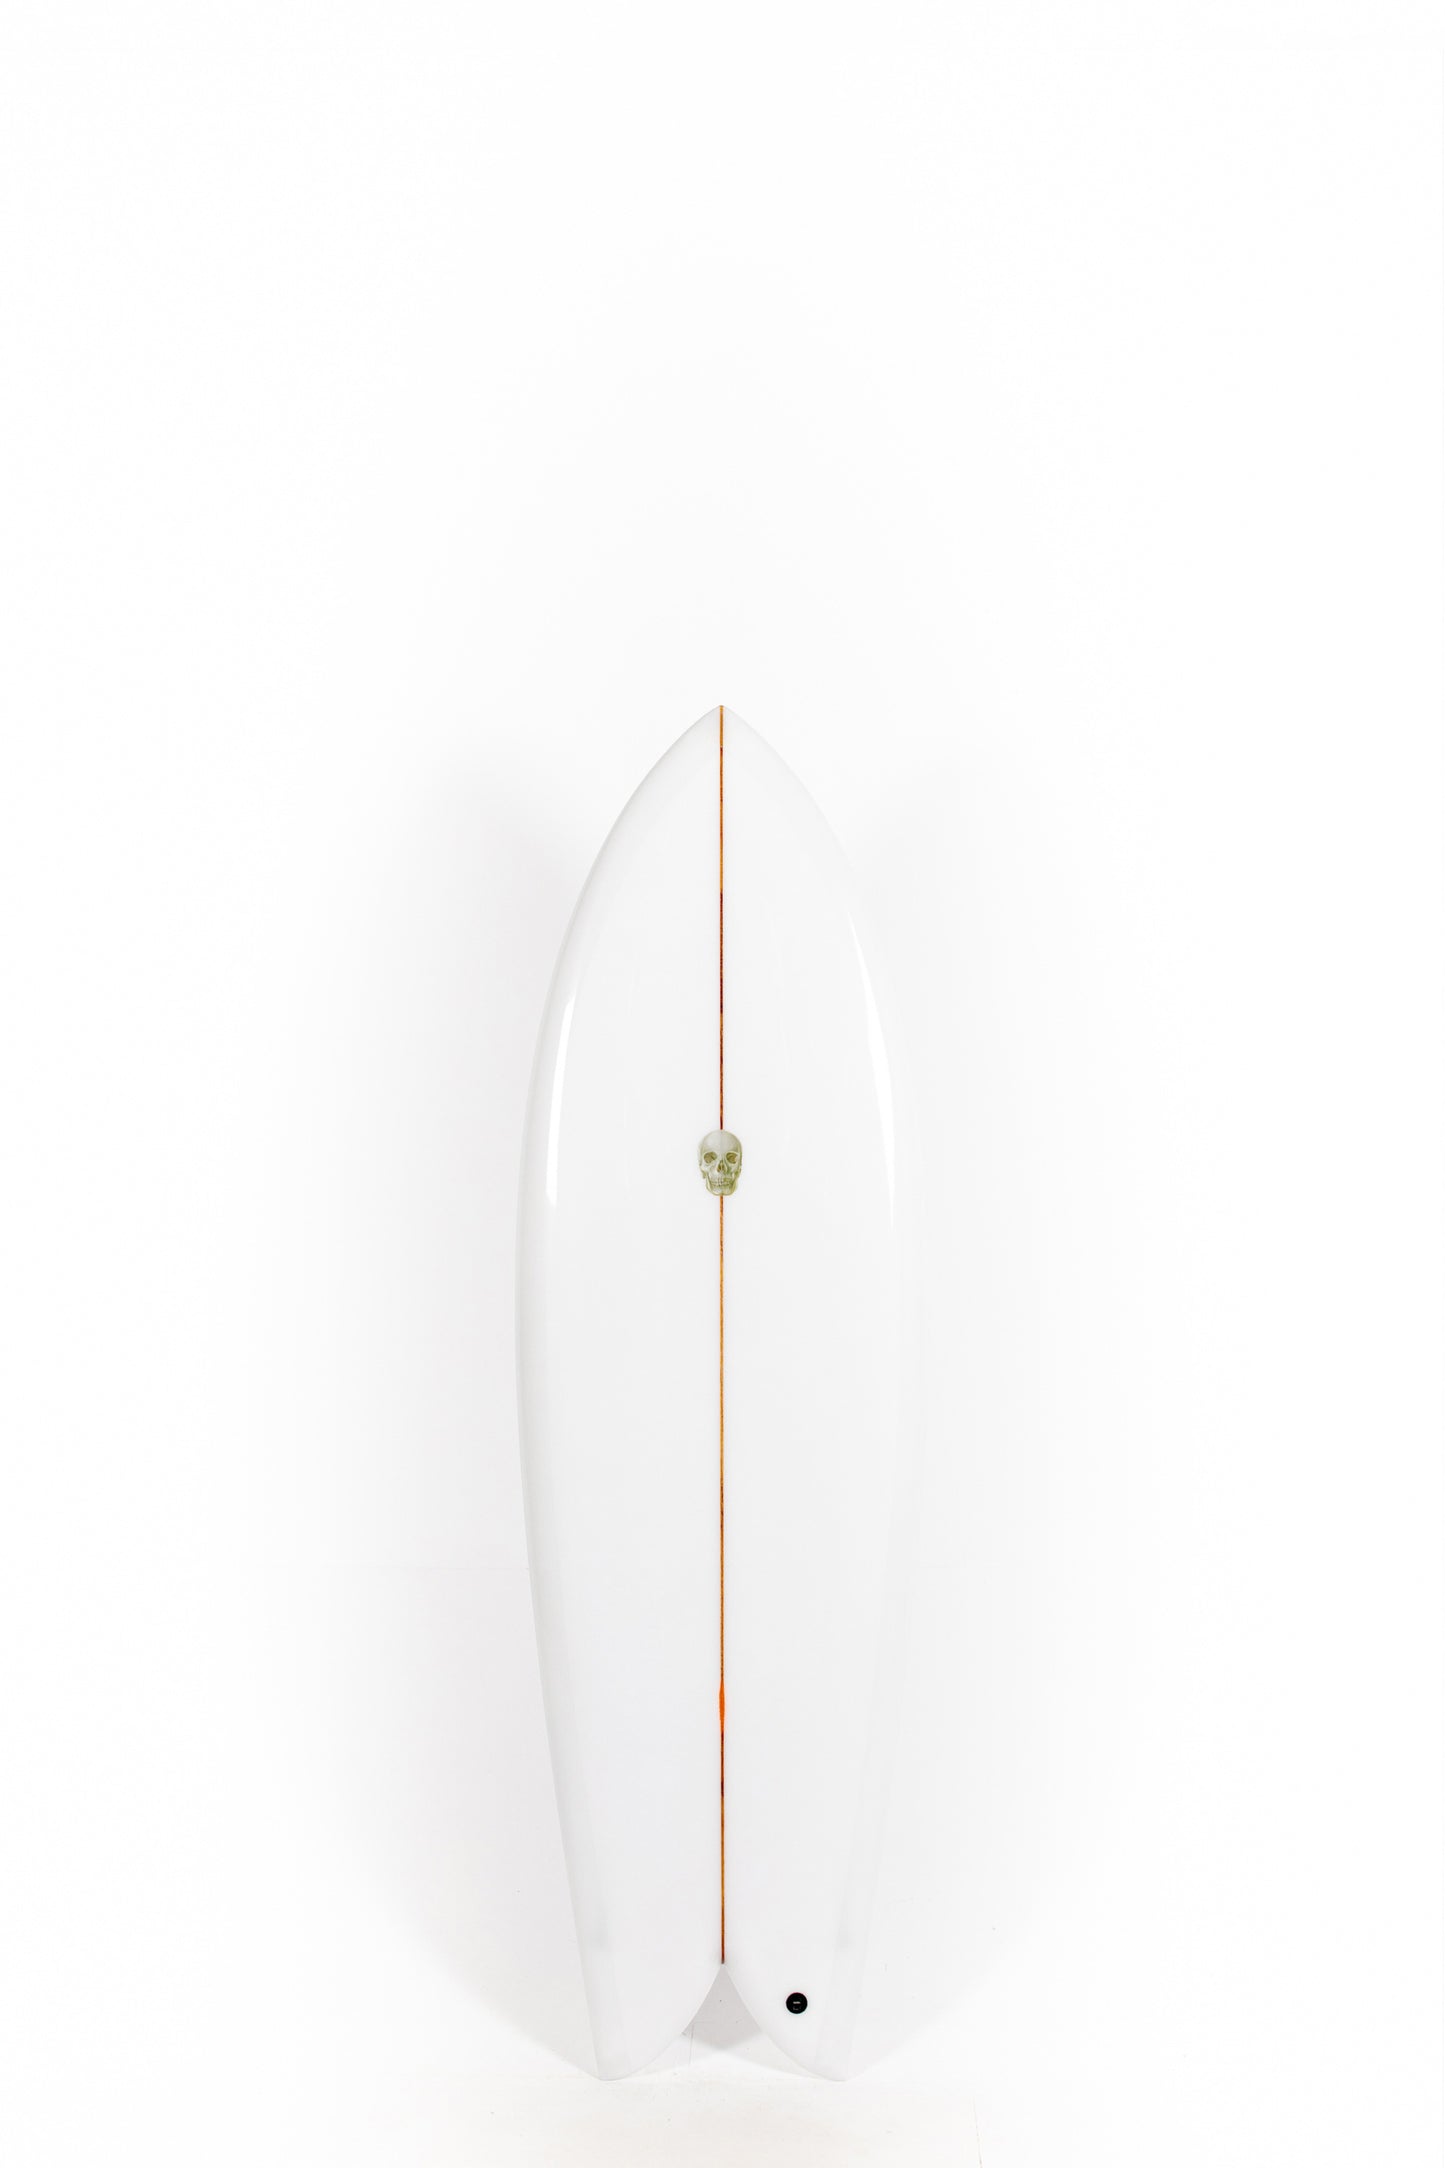 
                  
                    Pukas Surf Shop - Christenson Surfboards - CHRIS FISH - 5'10" x 21 1/4 x 2 5/8 -CX03329
                  
                